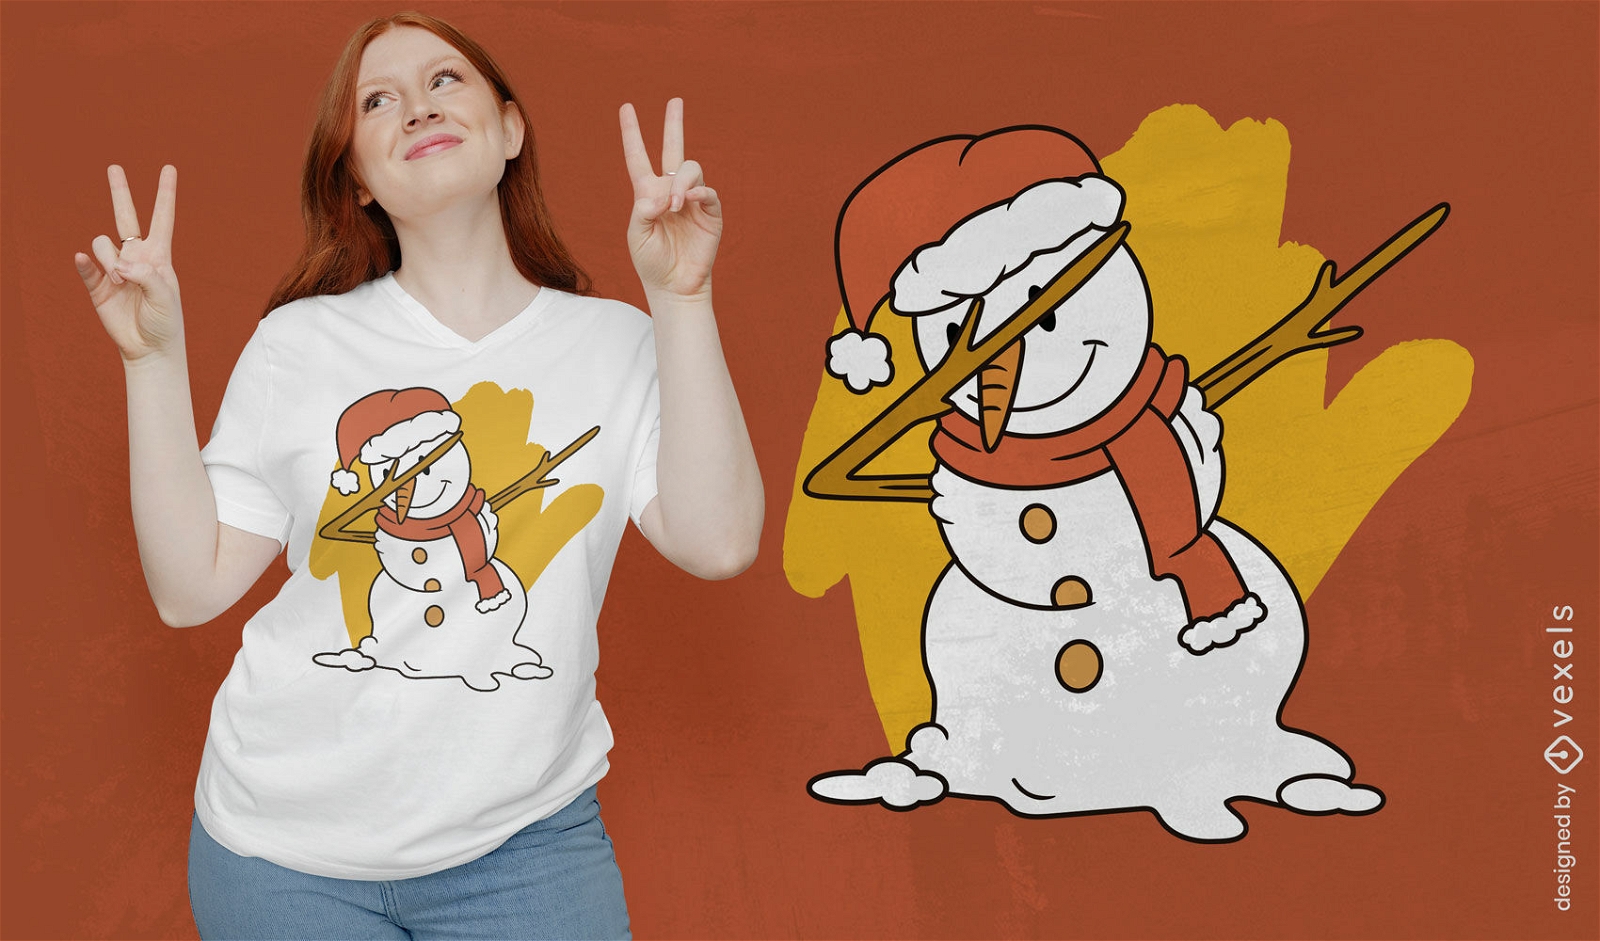 Verspieltes T-Shirt Design mit tupfendem Schneemann